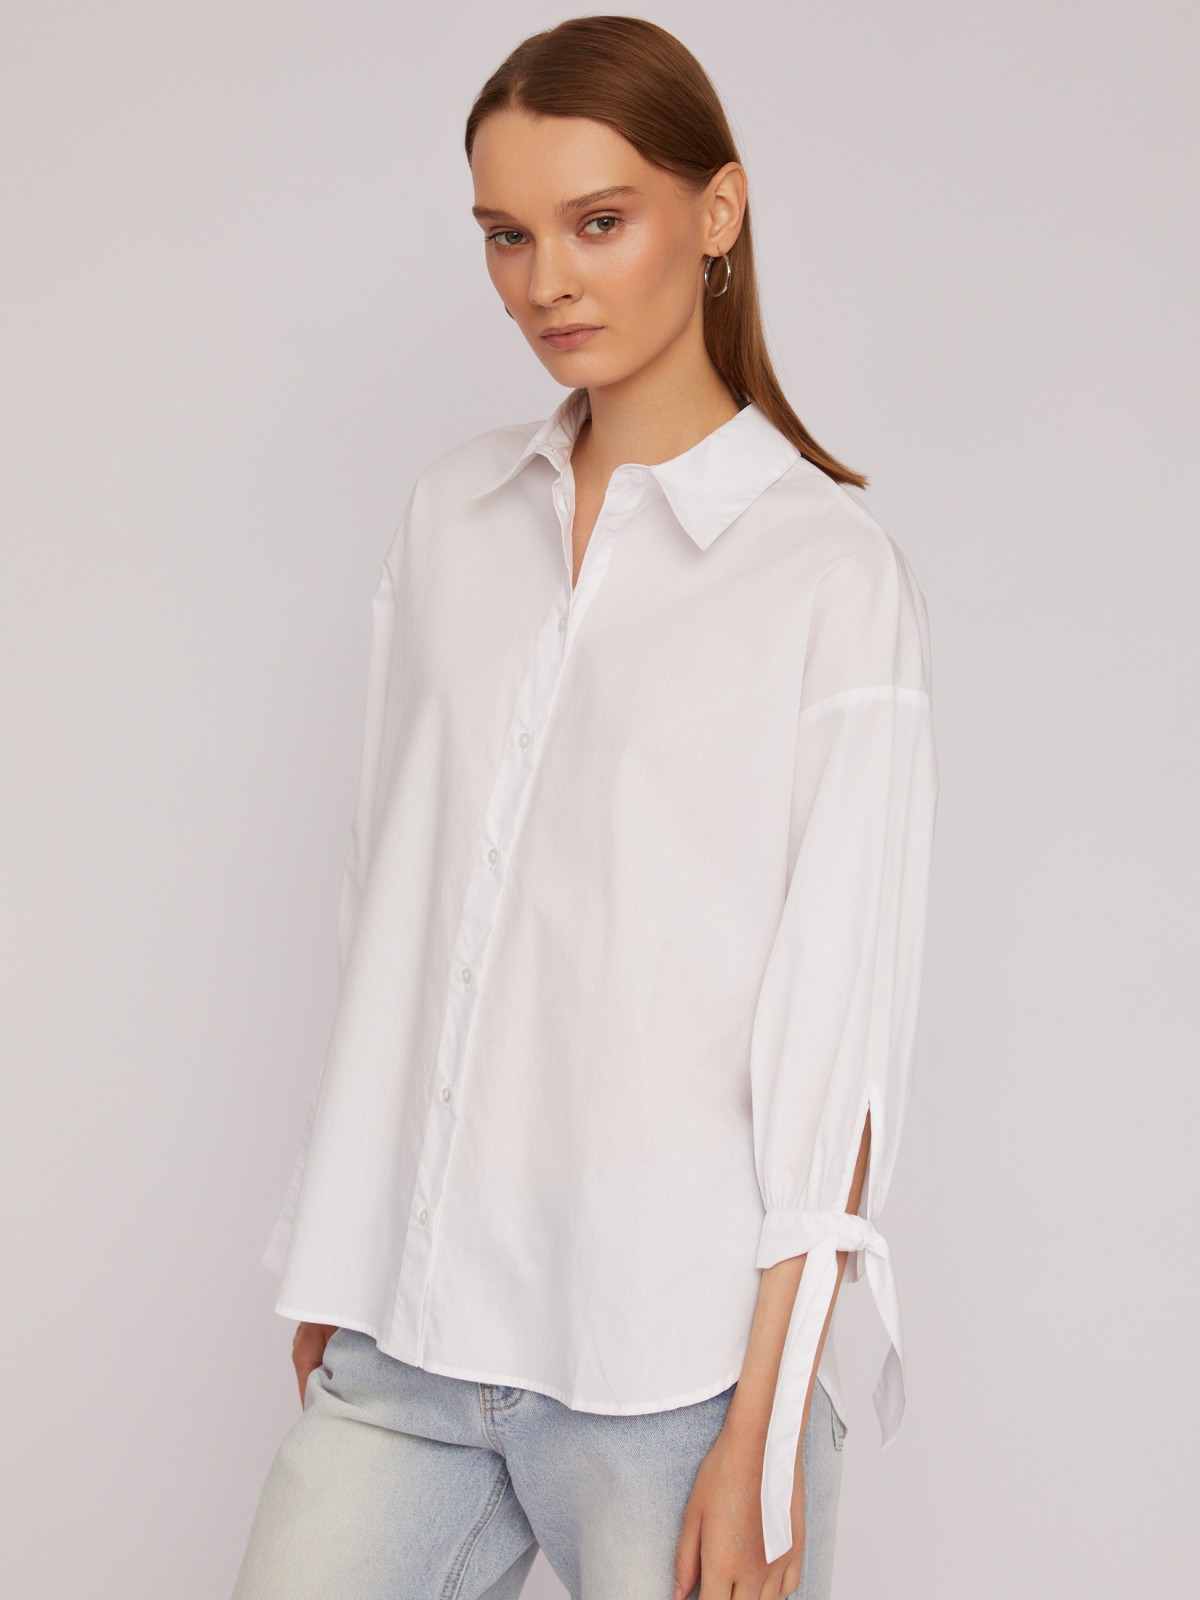 Рубашка из хлопка оверсайз силуэта с акцентными манжетами zolla 024211159033, цвет белый, размер XS - фото 1